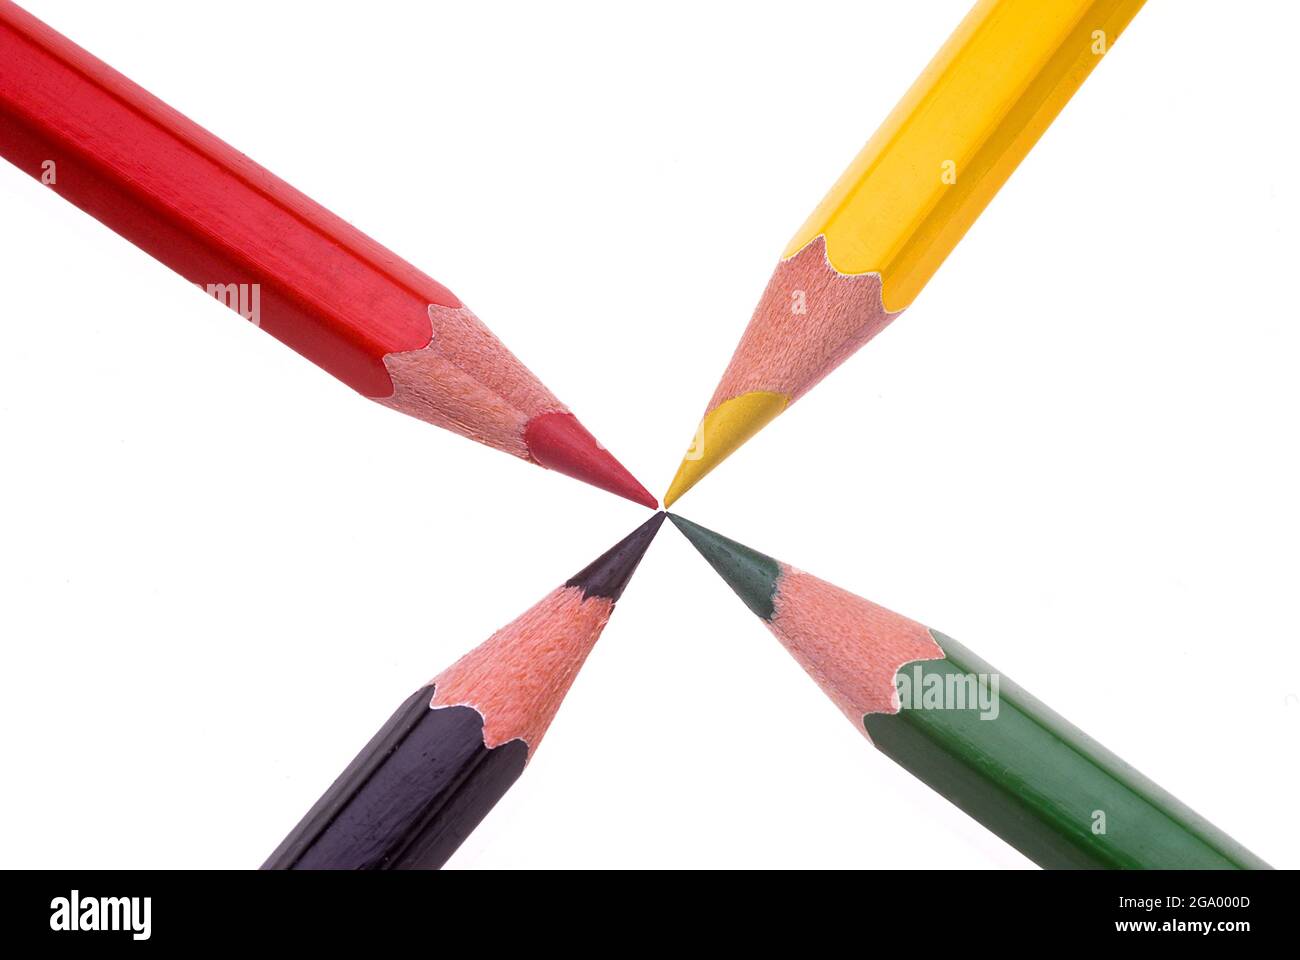 crayon de couleur, image symbole des partis politiques Banque D'Images